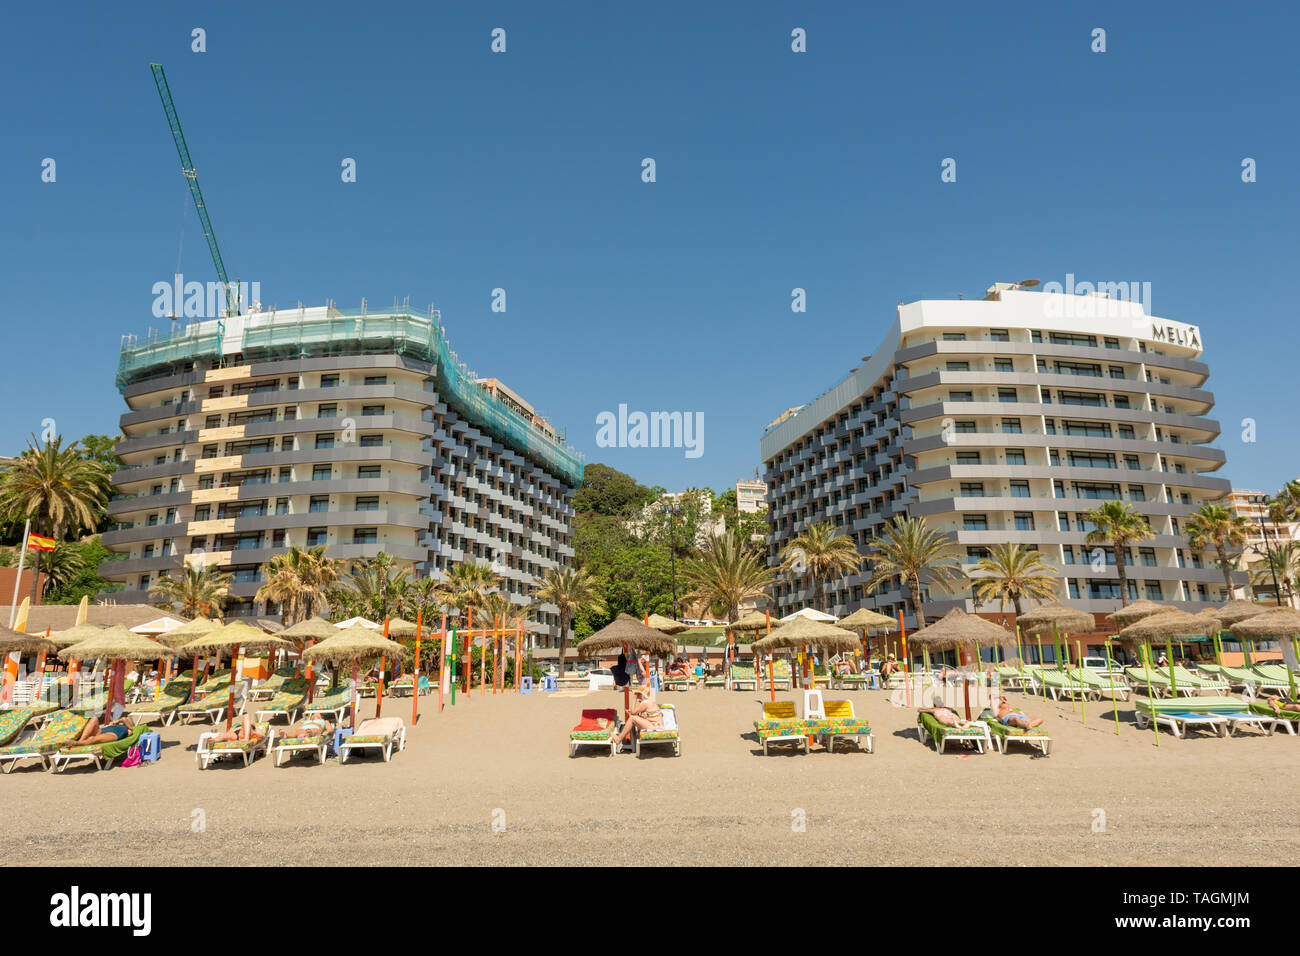 Twin speculare immagine hotel edifici appartenenti l'hotel Melia catena sul lungomare di Torremolinos, Costa del Sol, Spagna Foto Stock